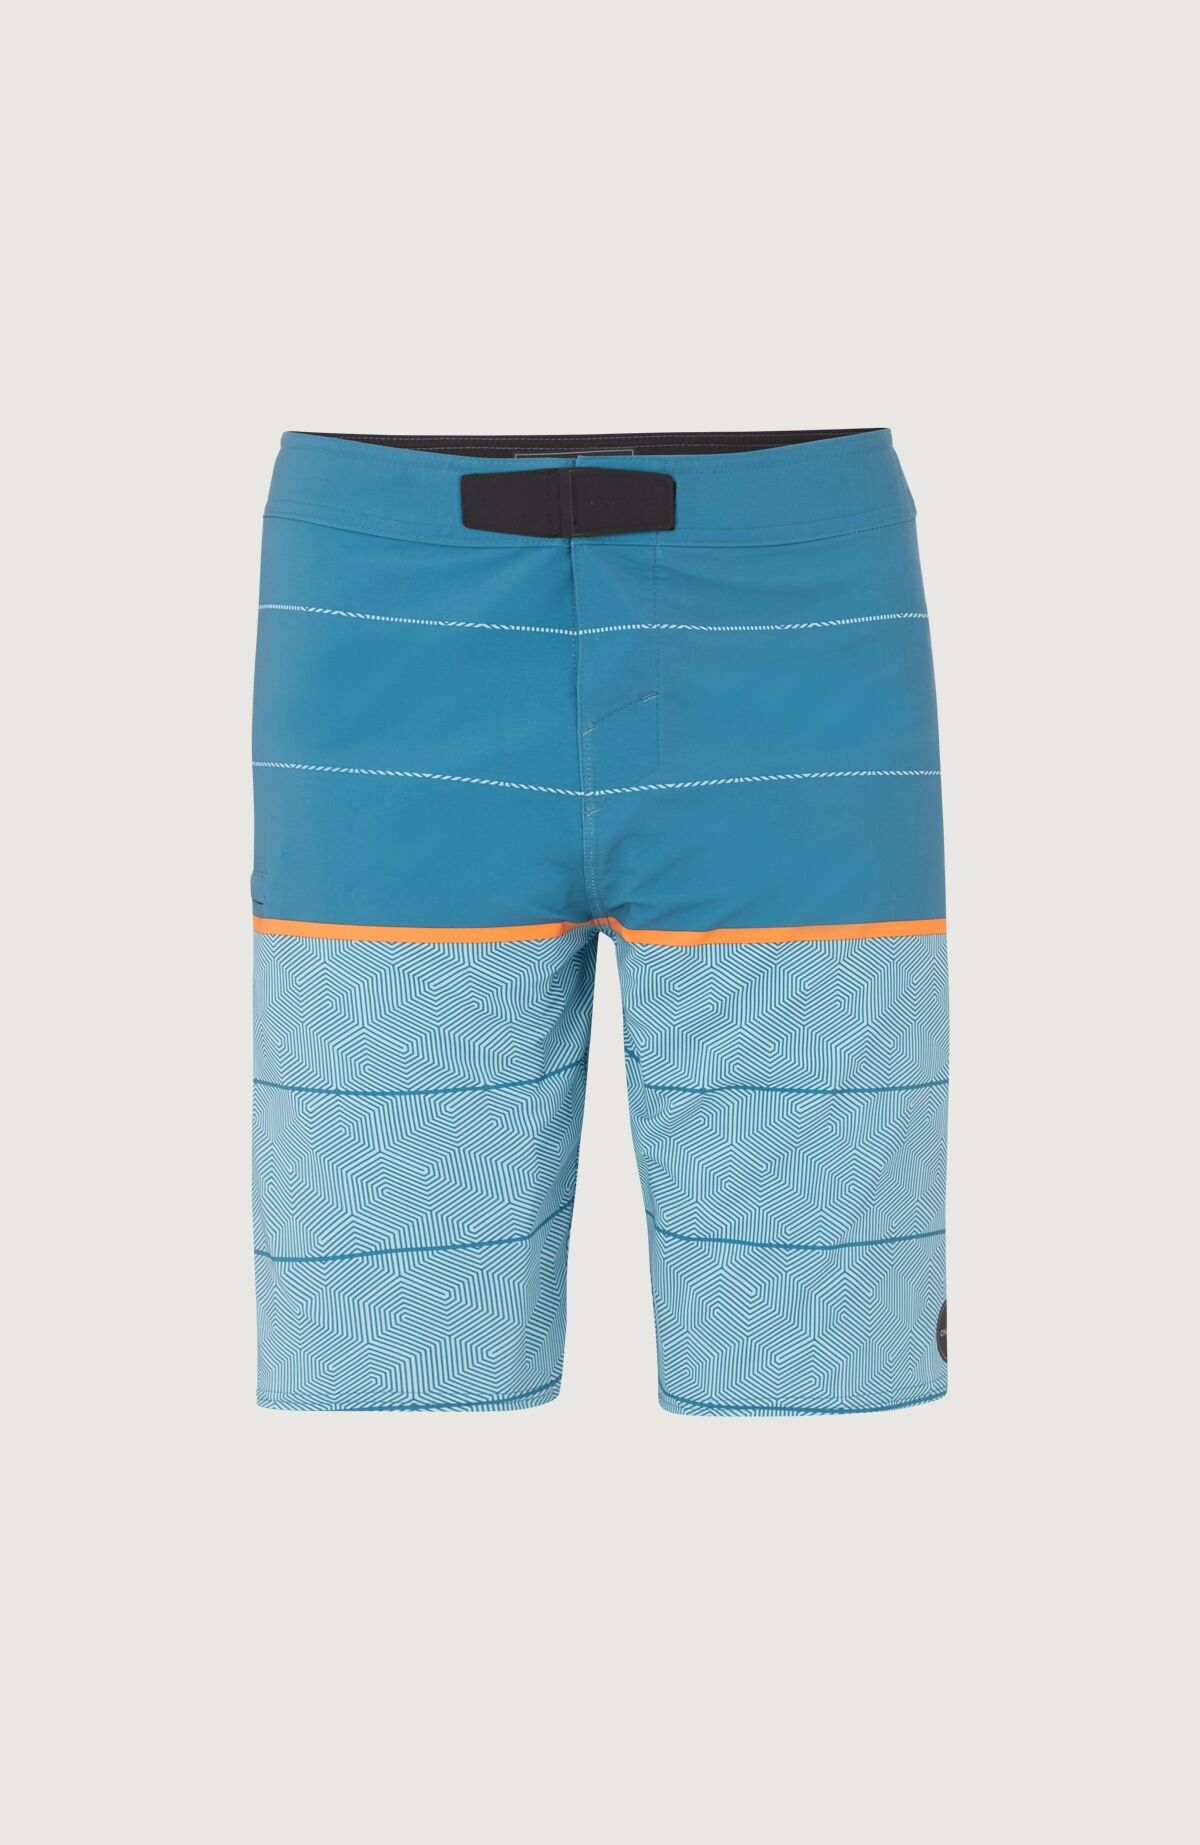 O'Neill Hyperfreak Wanderer - Swim shorts - Men's